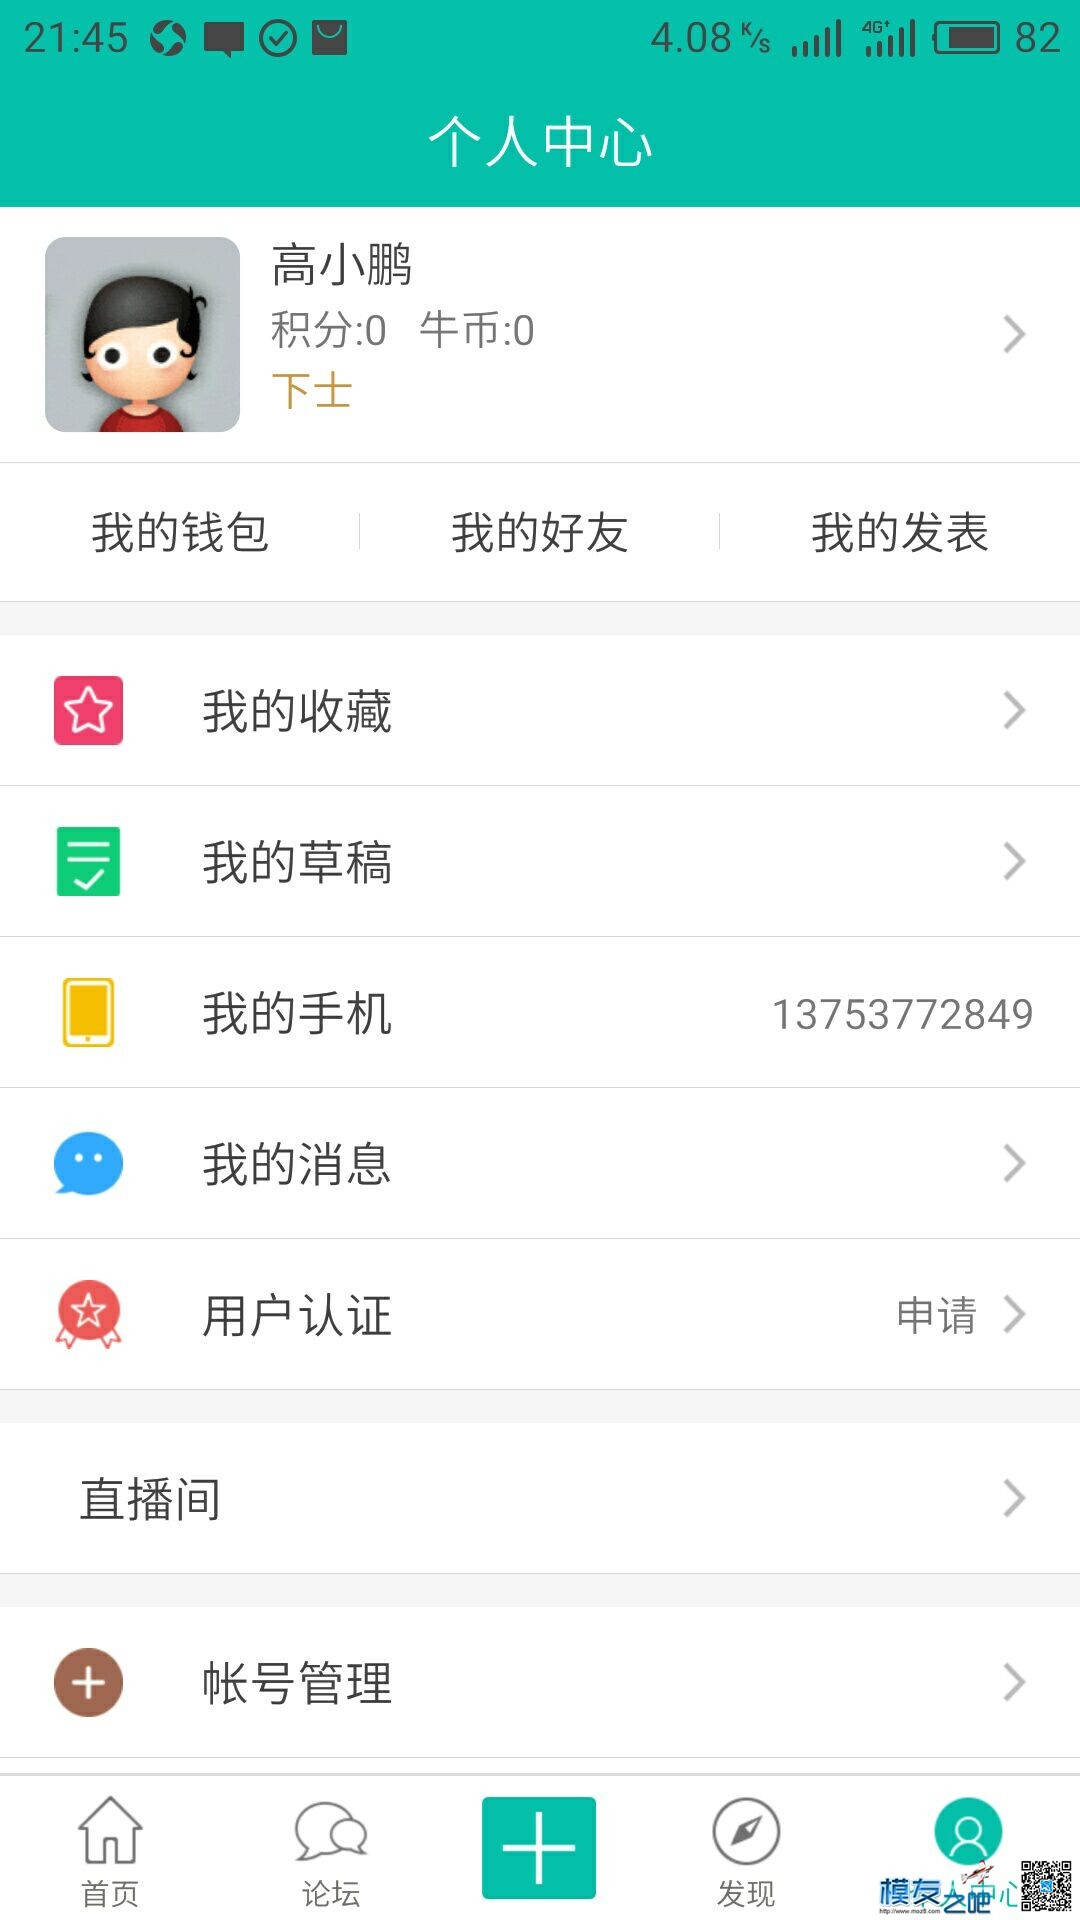 【模友之吧】100个aomway5.8G-500mw图传用于论坛推广！  作者:zhangyiyun2014 2980 